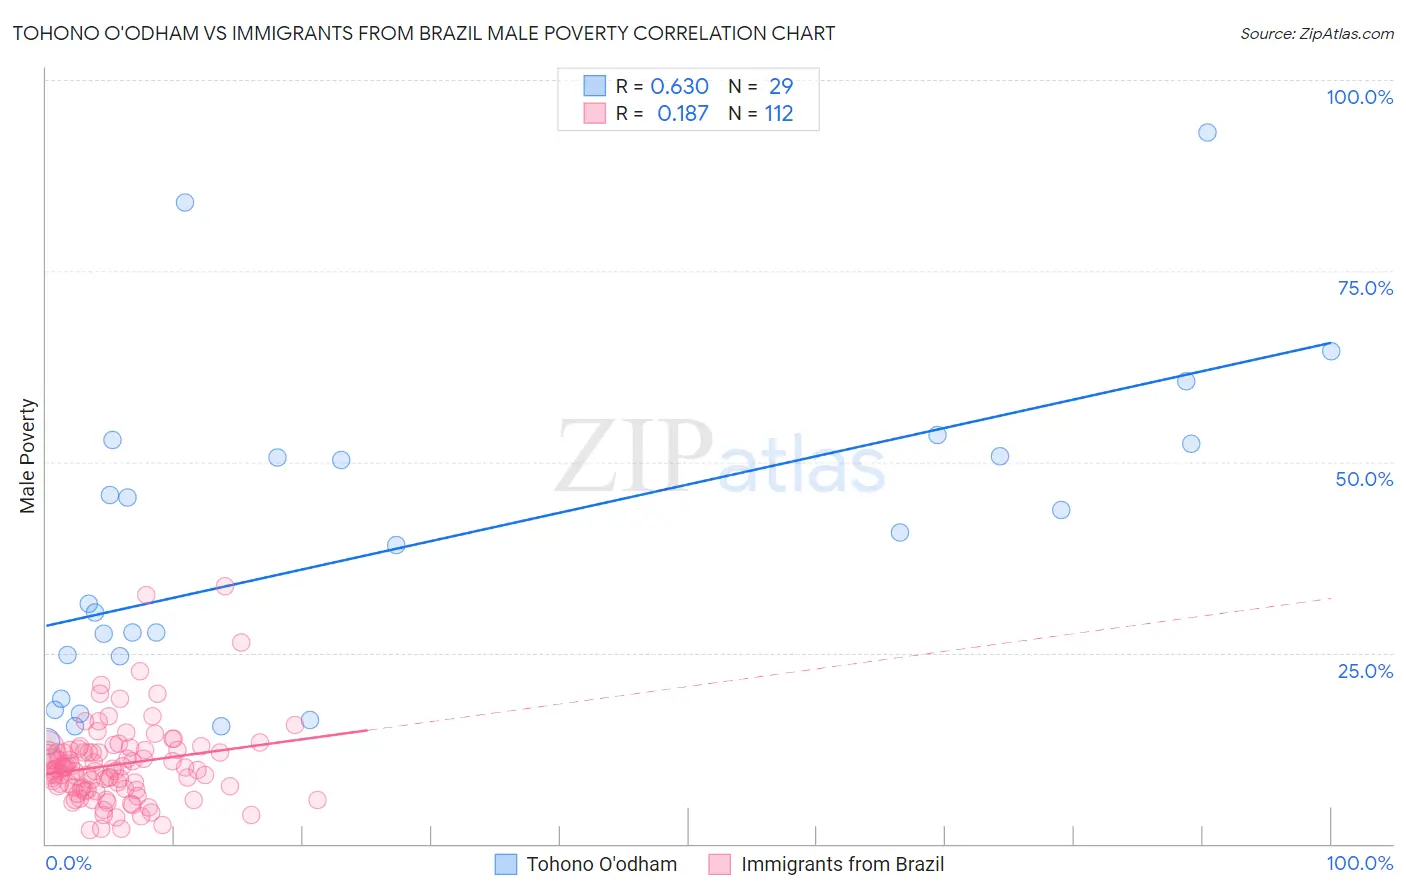 Tohono O'odham vs Immigrants from Brazil Male Poverty